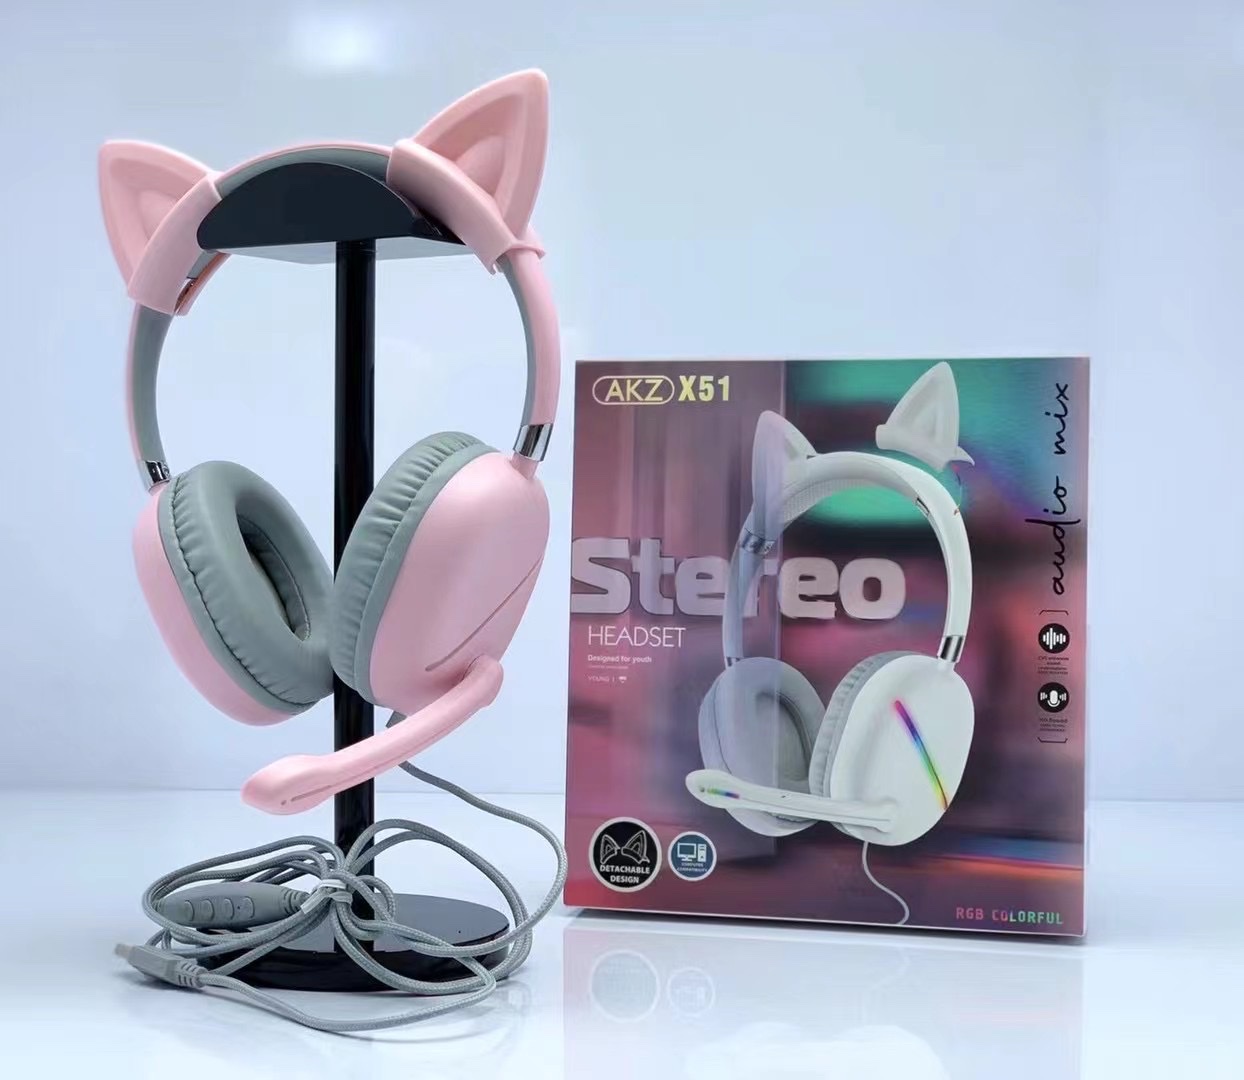 新款AKZ-X51有线游戏耳机猫耳机可拆缷猫耳RGB灯炫彩发光带线耳麦带声卡功能详情图5